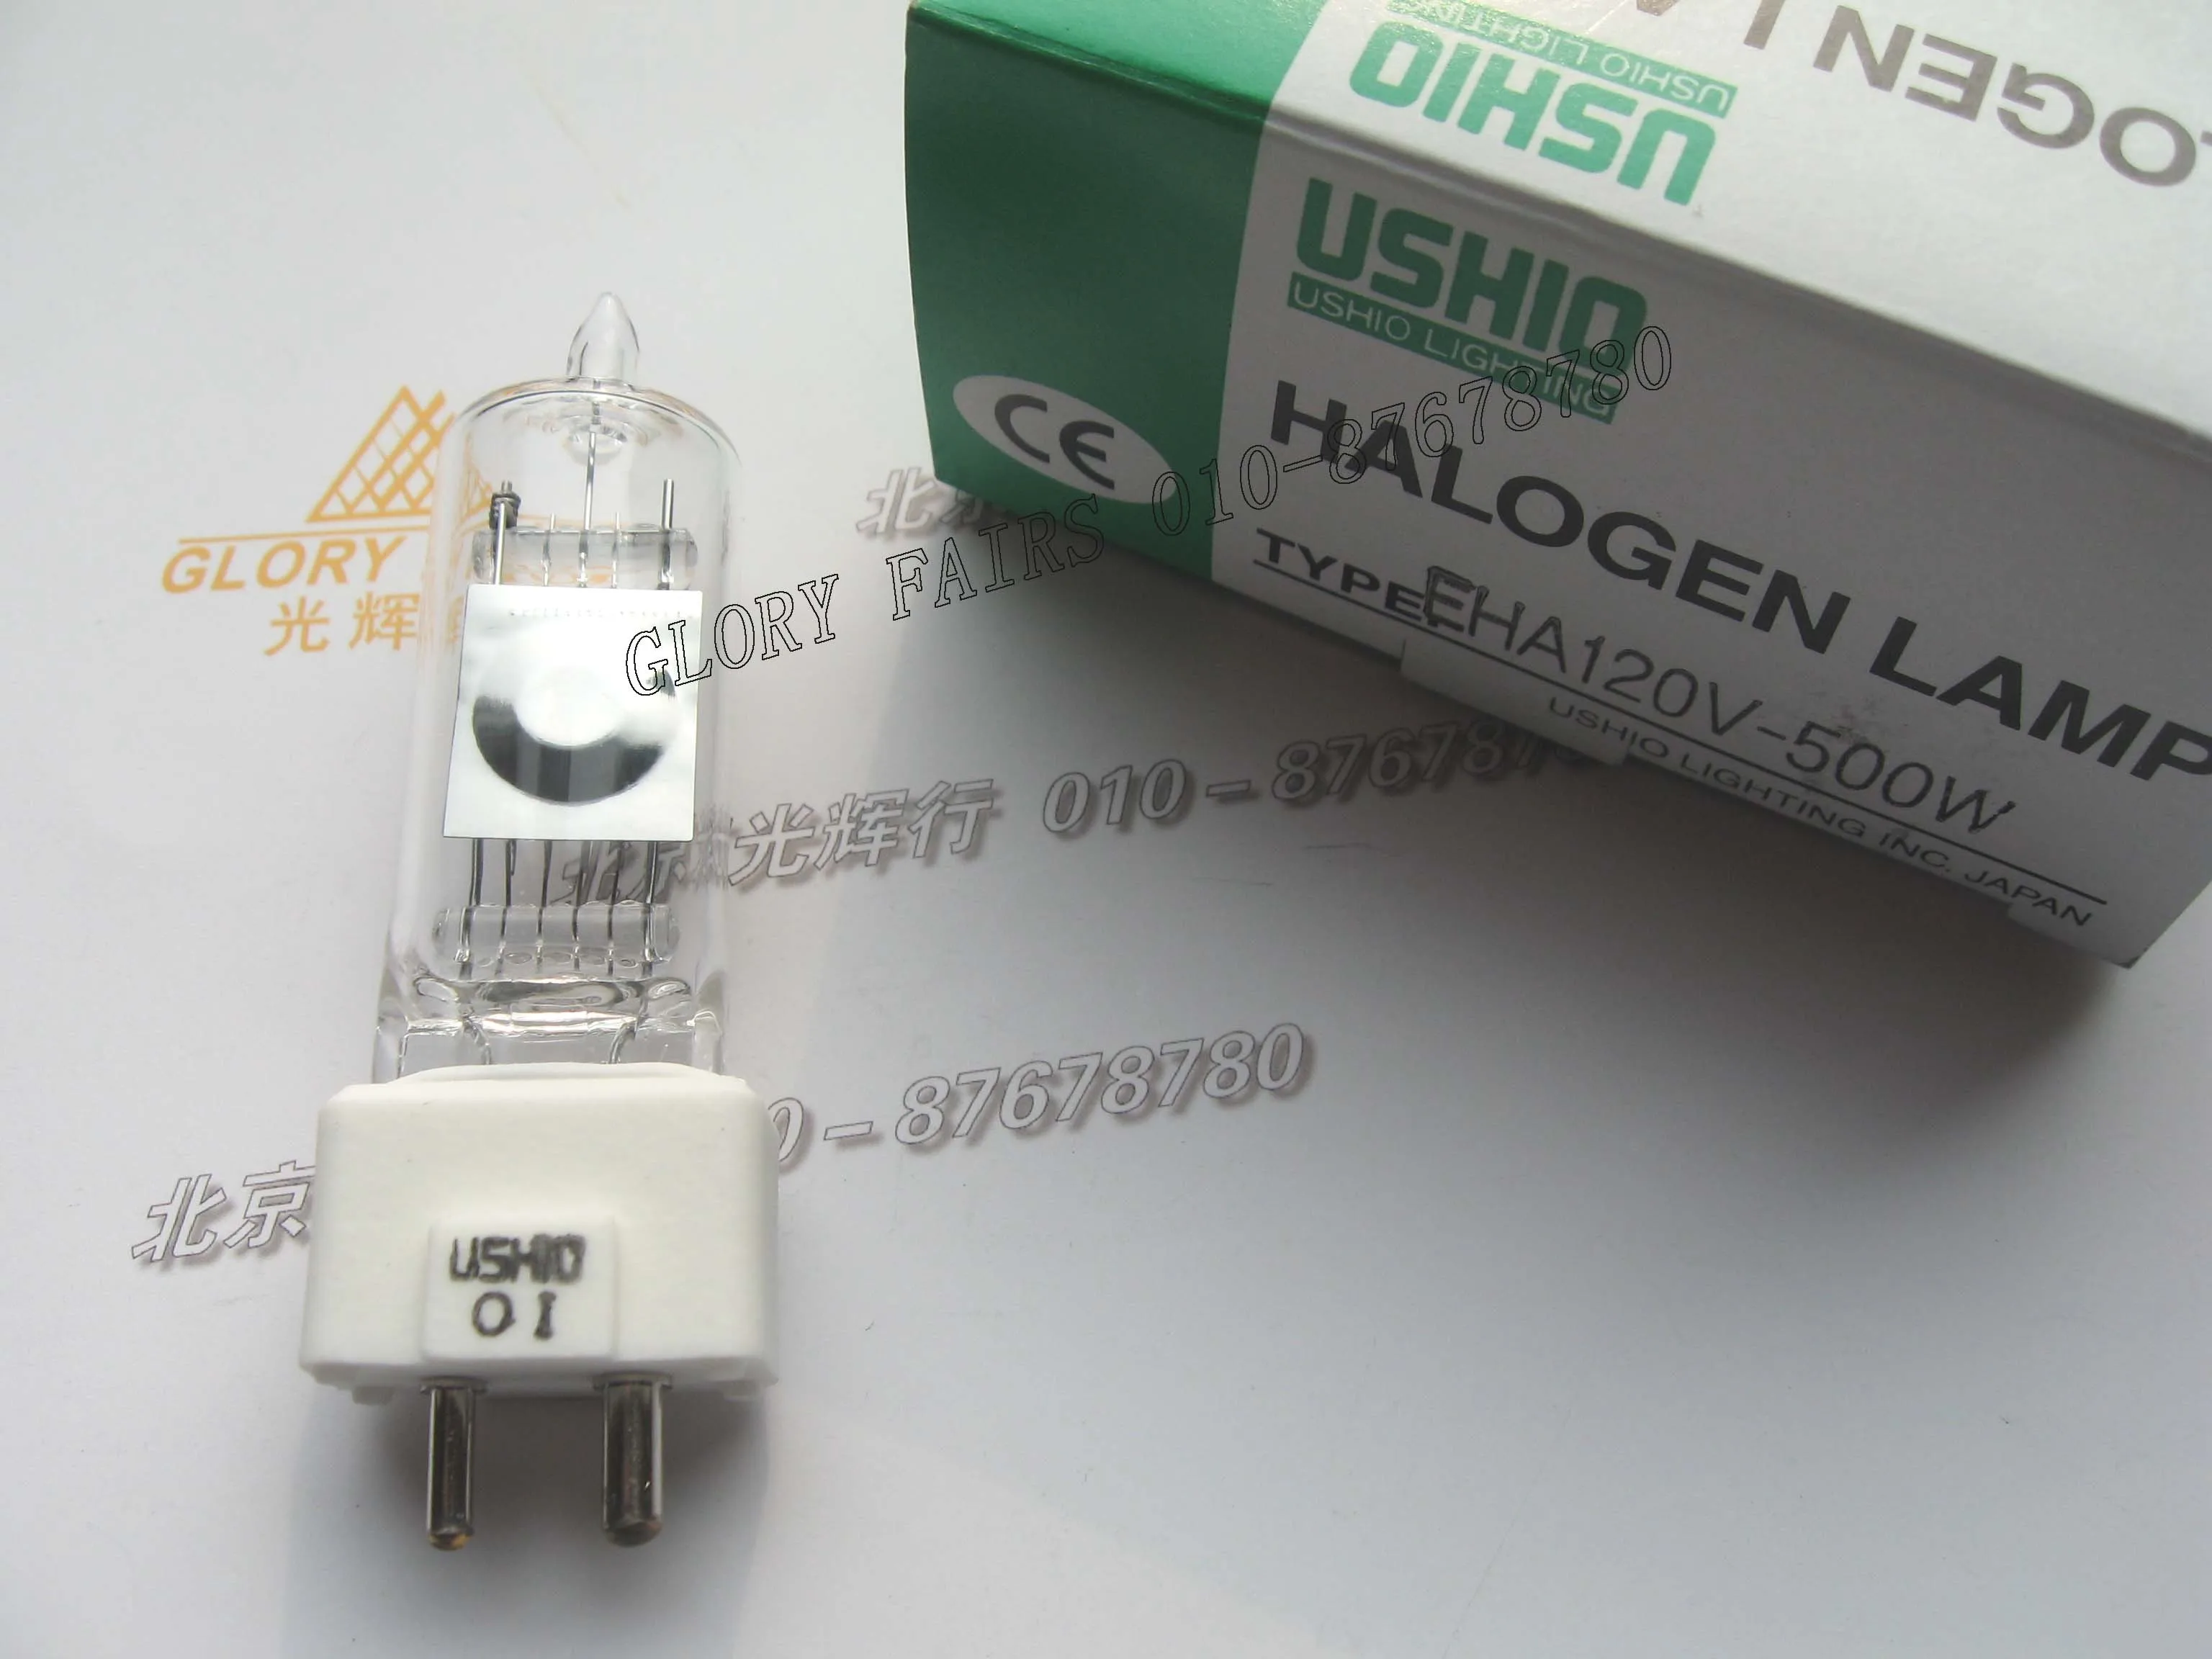 KLS JC 24V300W optical curve grinder under halogen bulb PG grinder rice bubble 